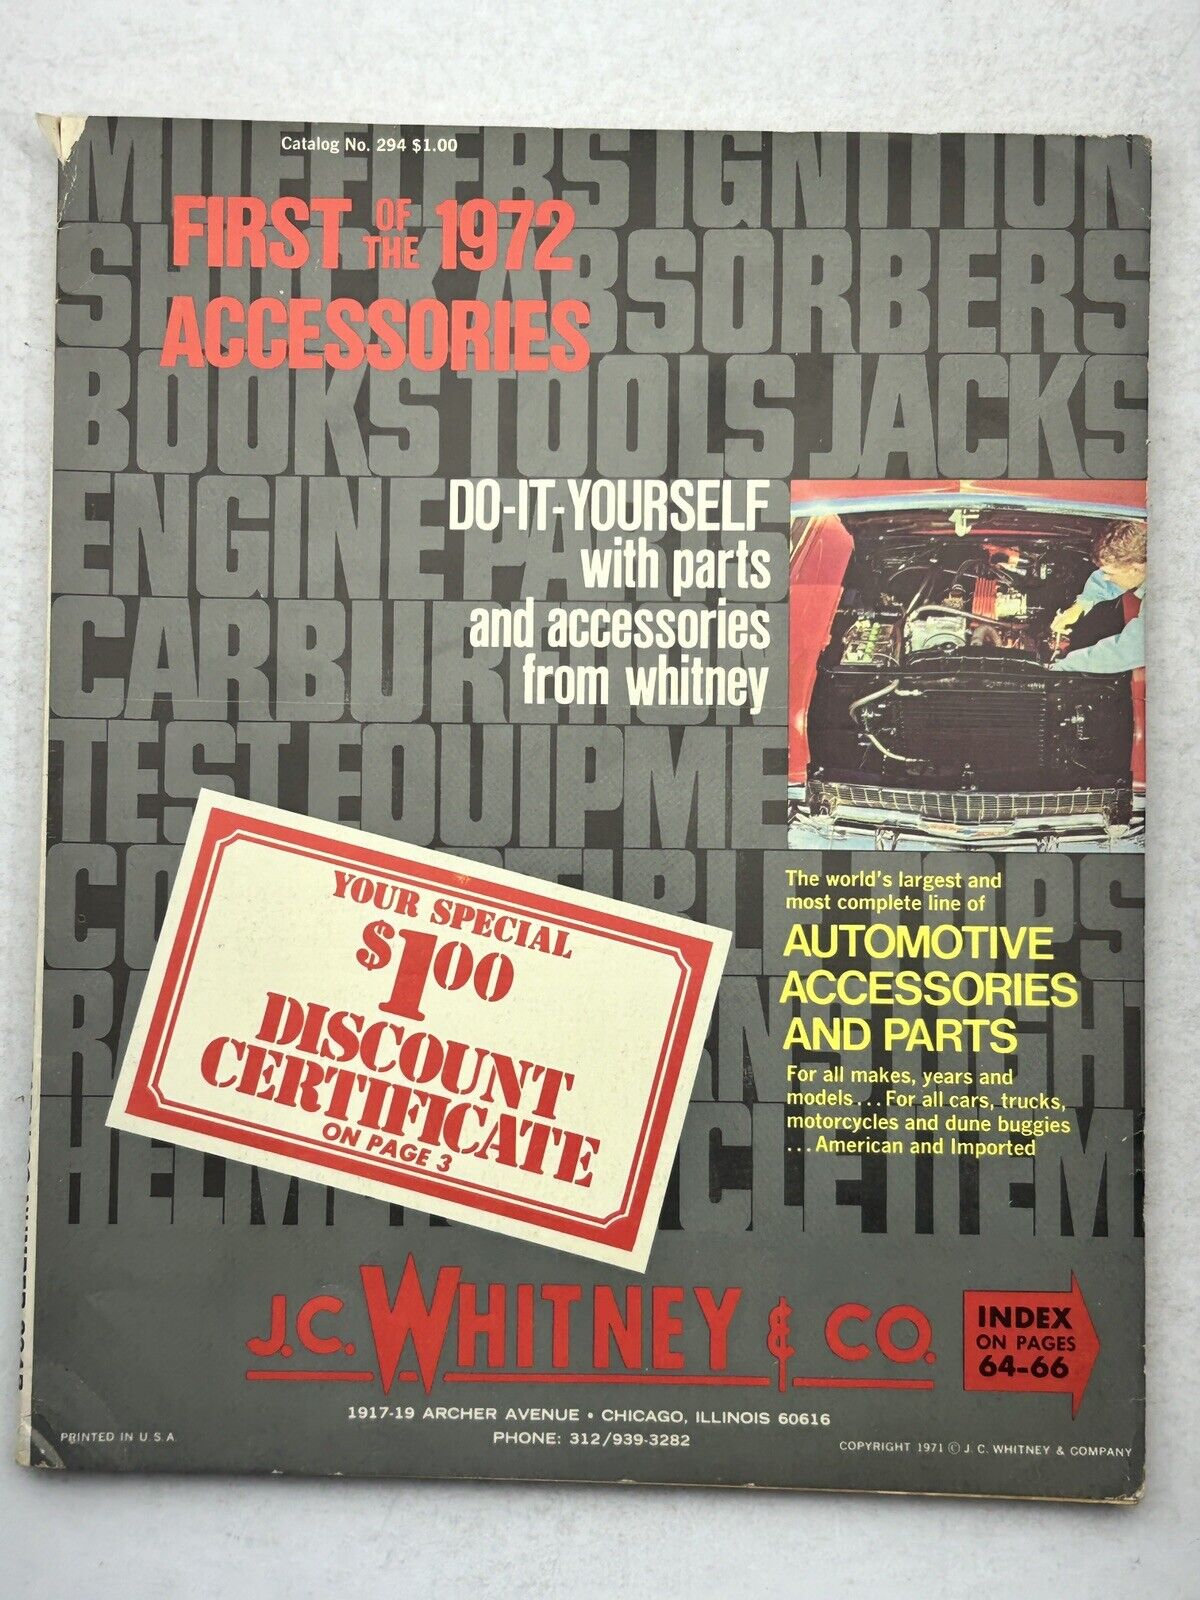 Vintage 1971 J. C. Whitney Automotive Parts & Accessories Catalog #294 - Cars